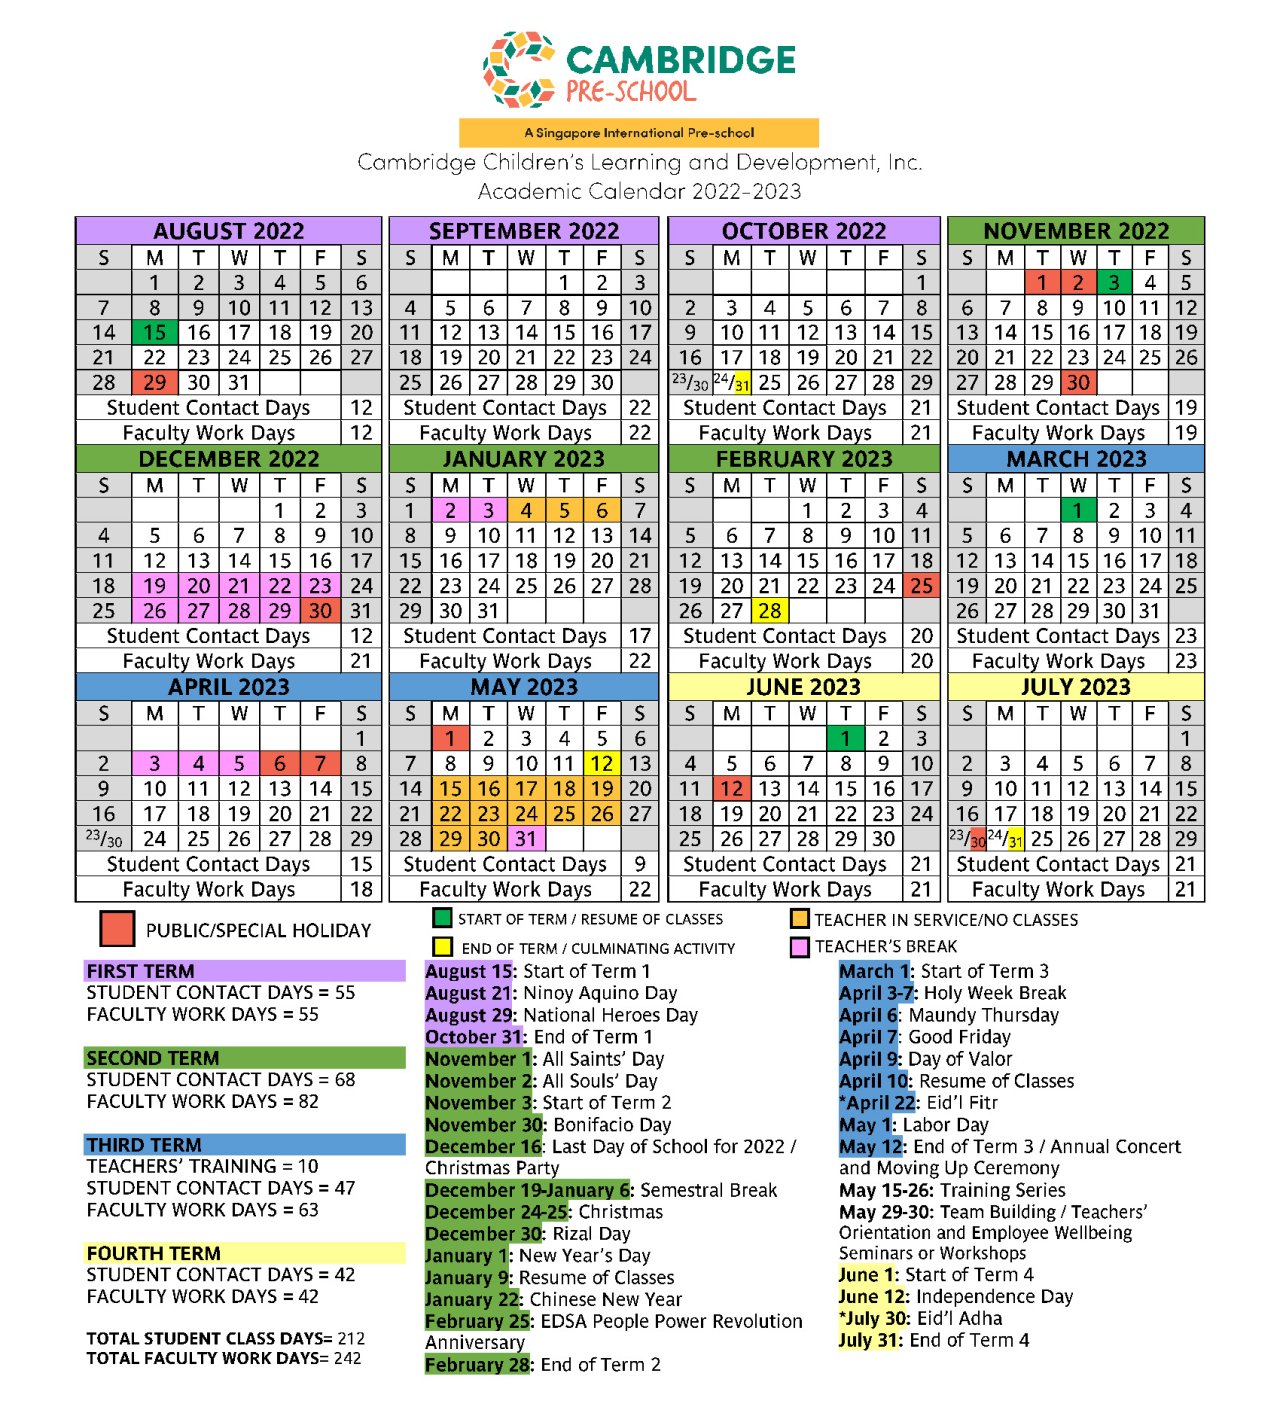 Academic Calendar SY 2022 2023 1280 